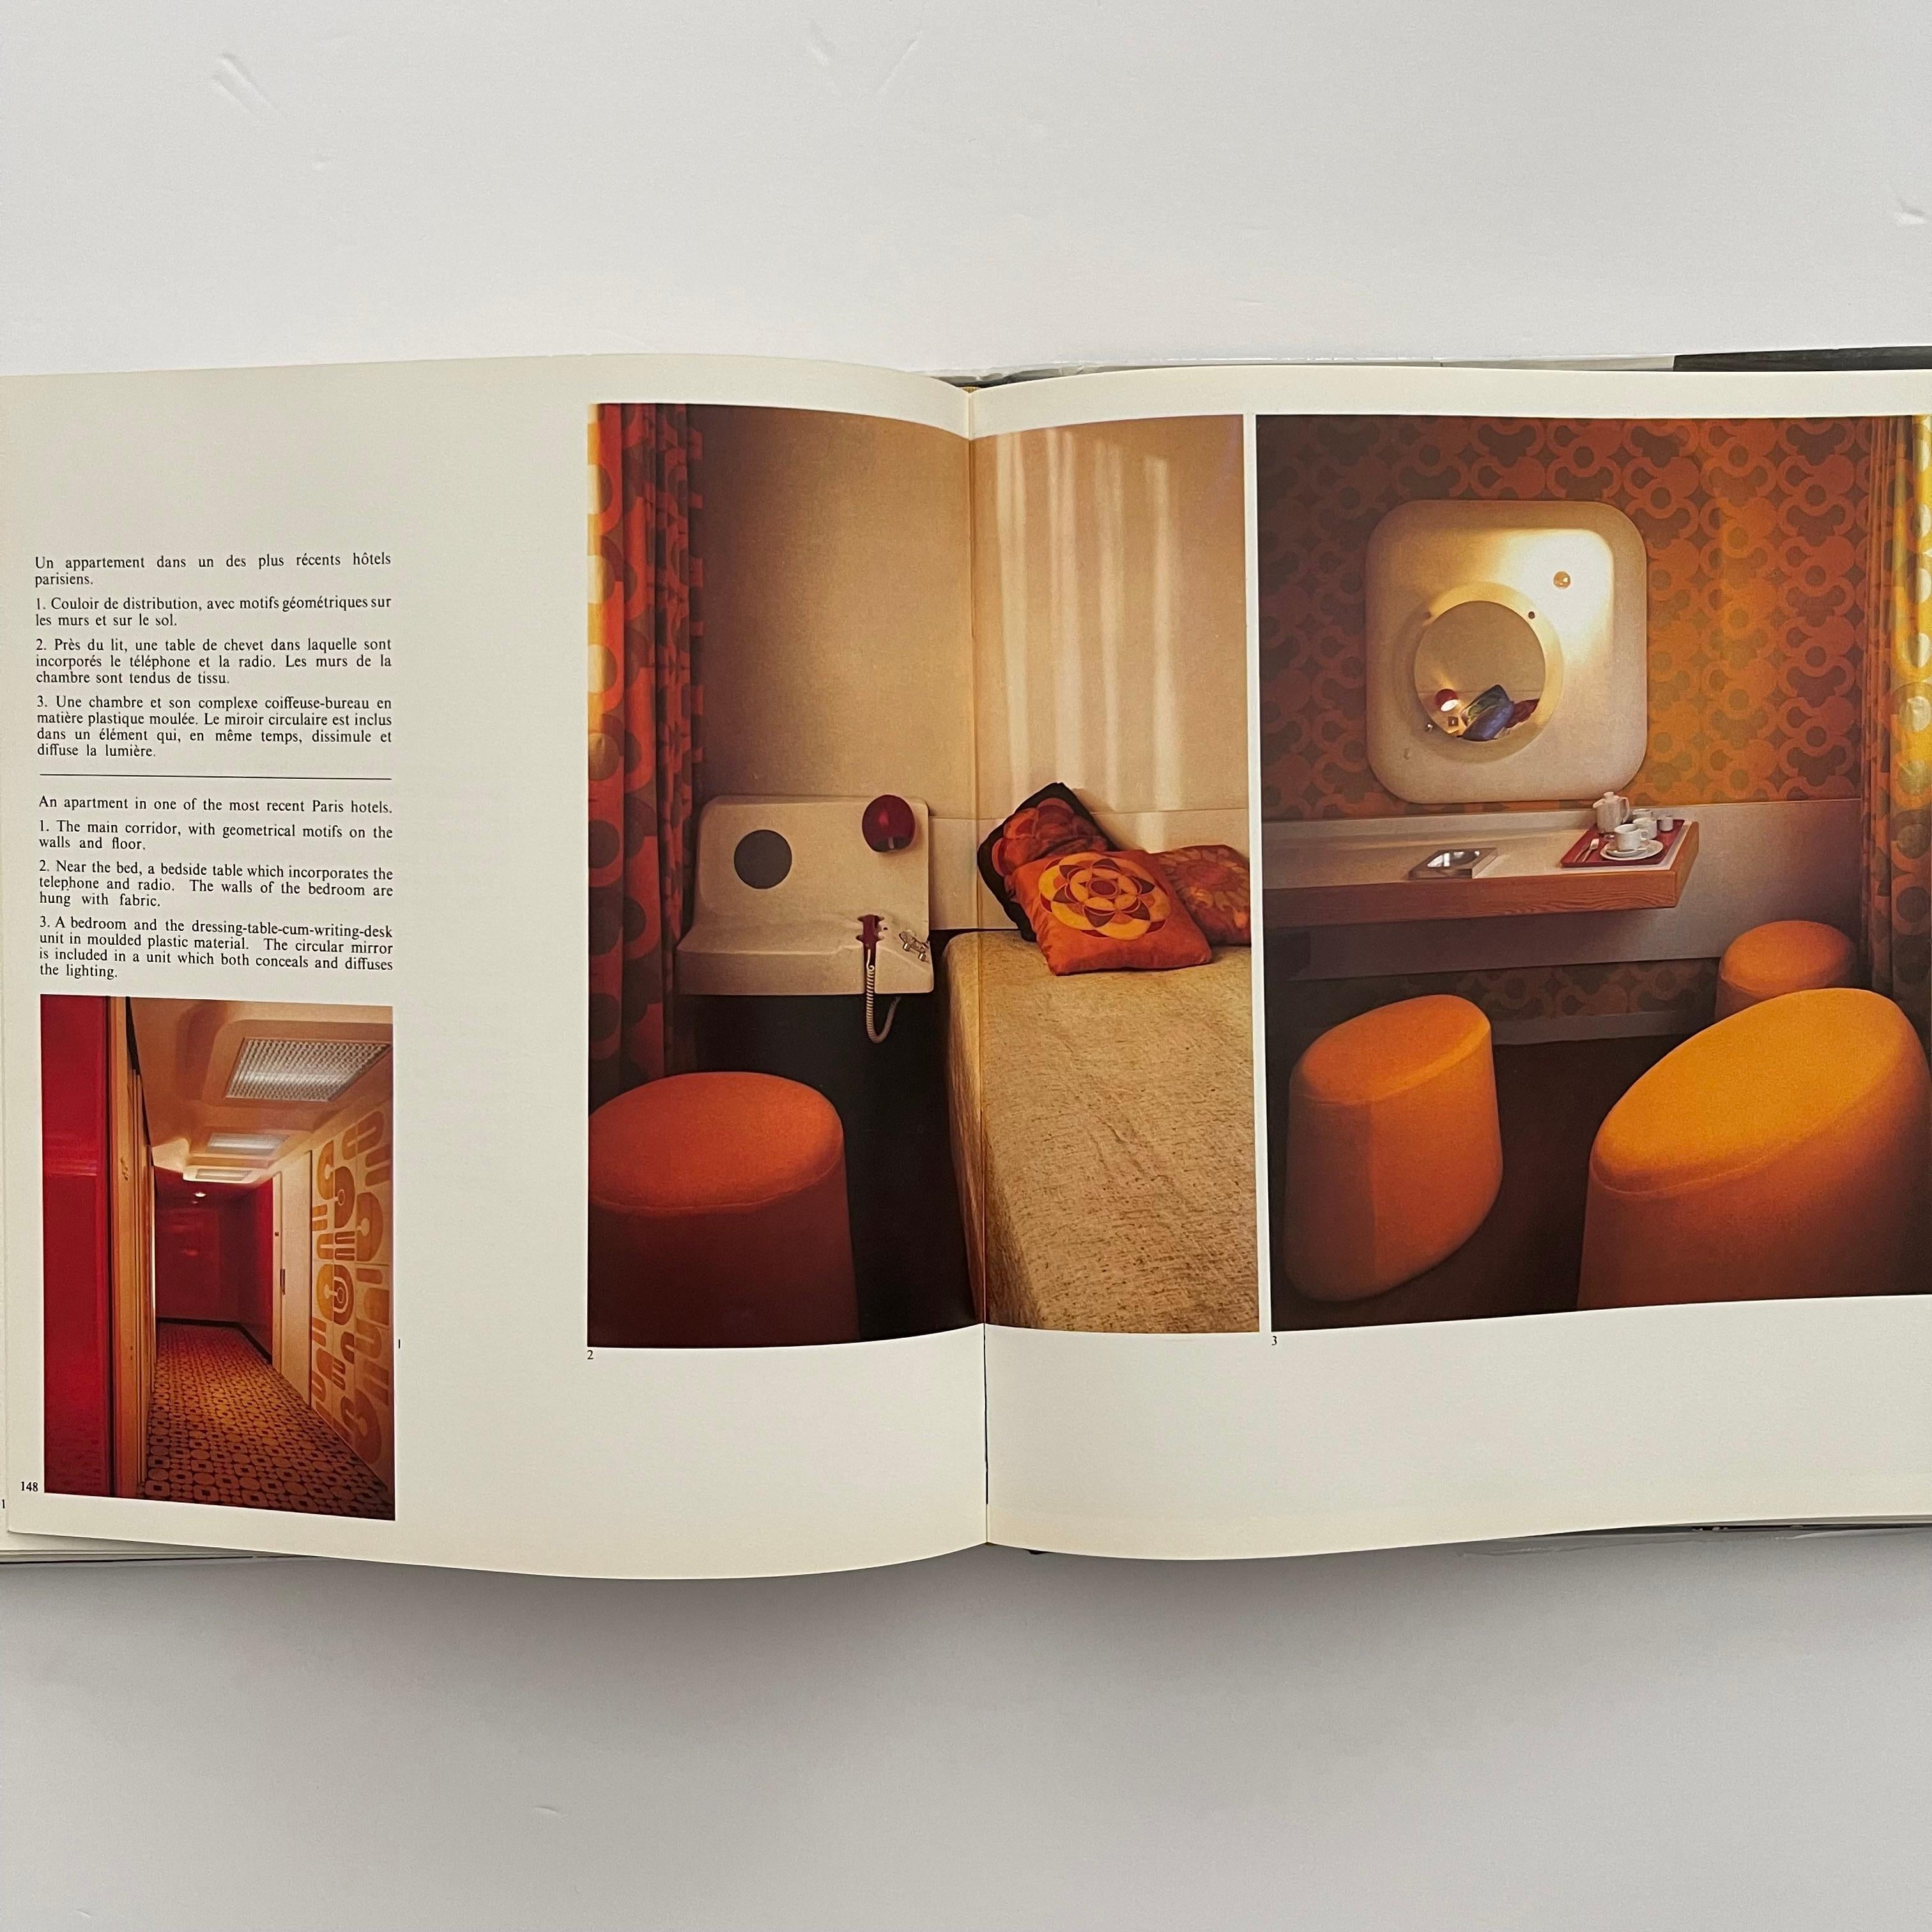 Fin du 20e siècle Maison Jansen - 1ère édition de la décoration, 1971